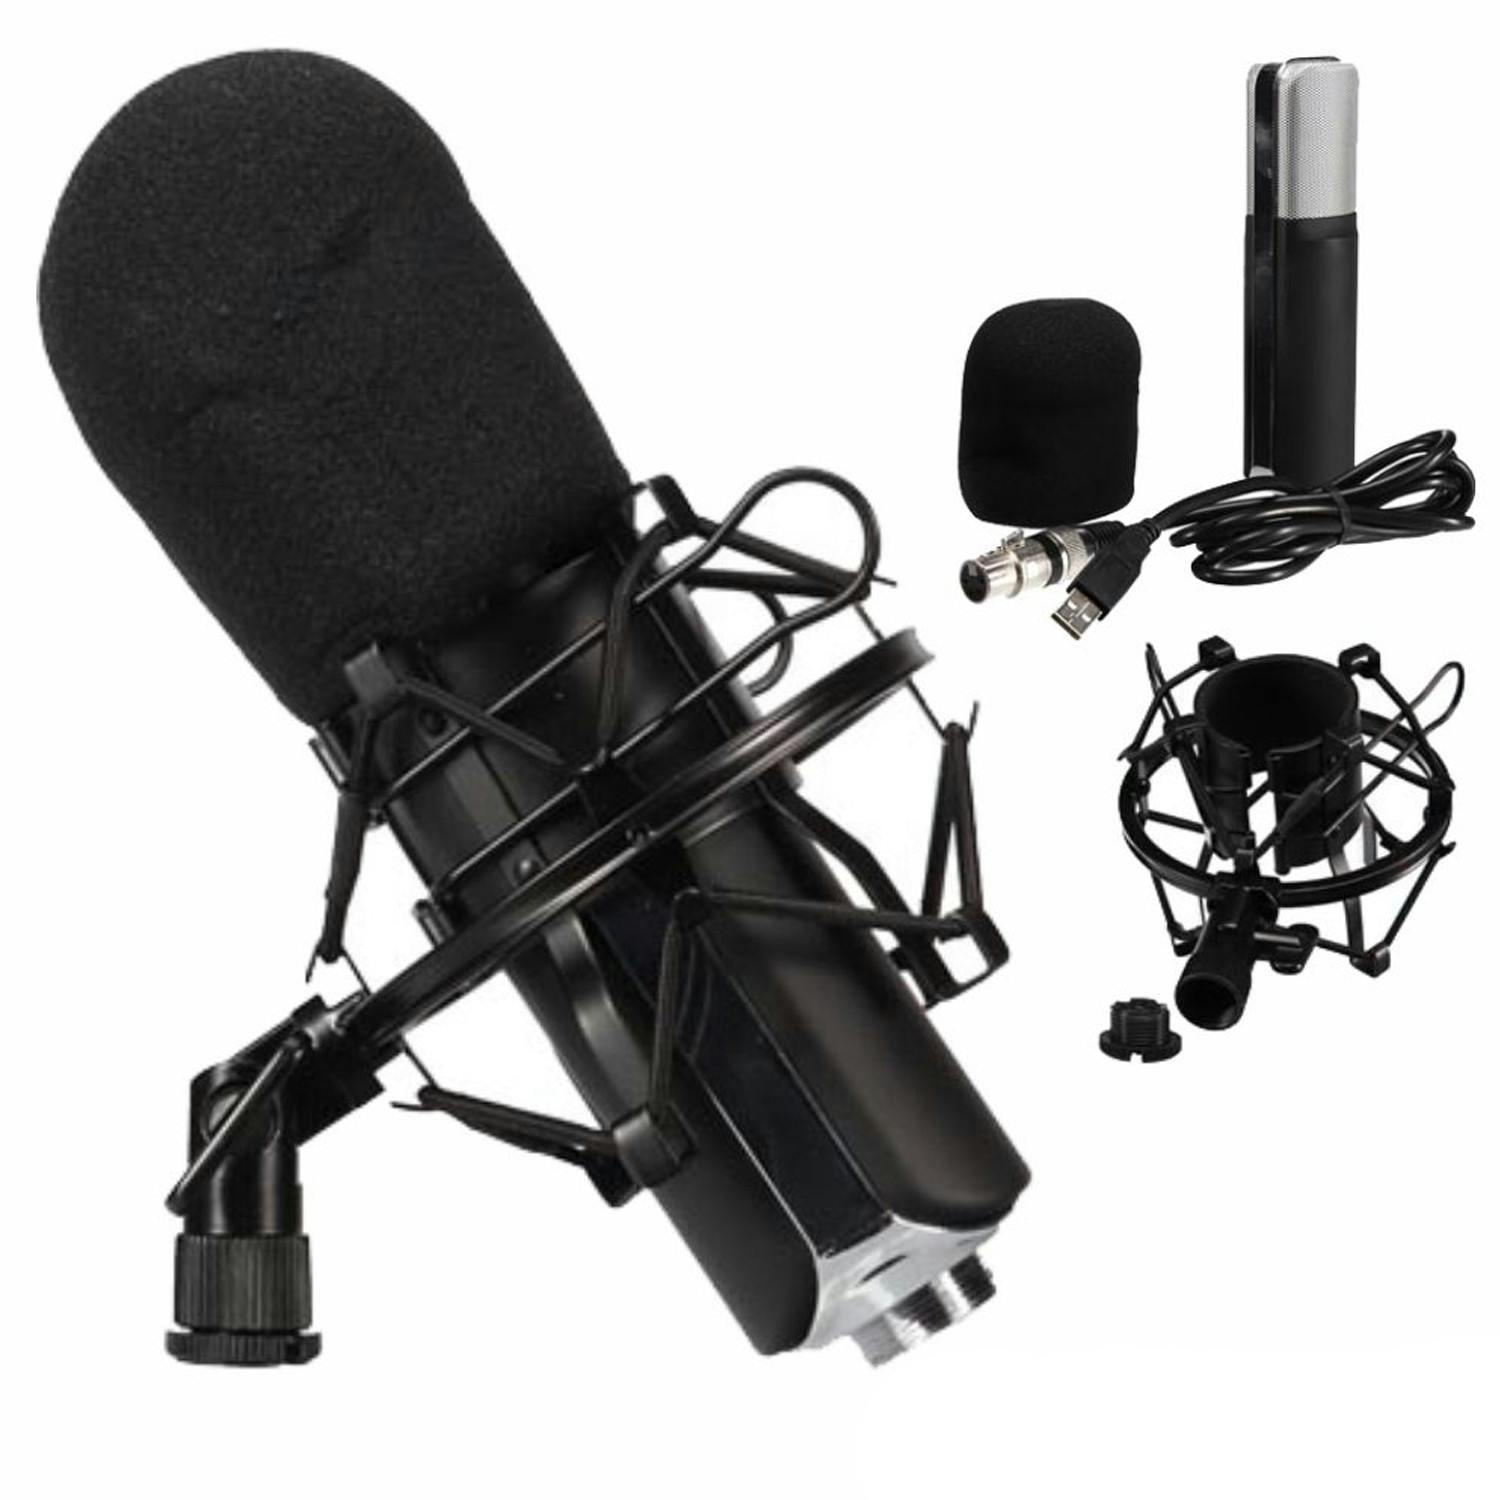 Kit avec microphone à condensateur pour Gamer, Vlogger ou auteur